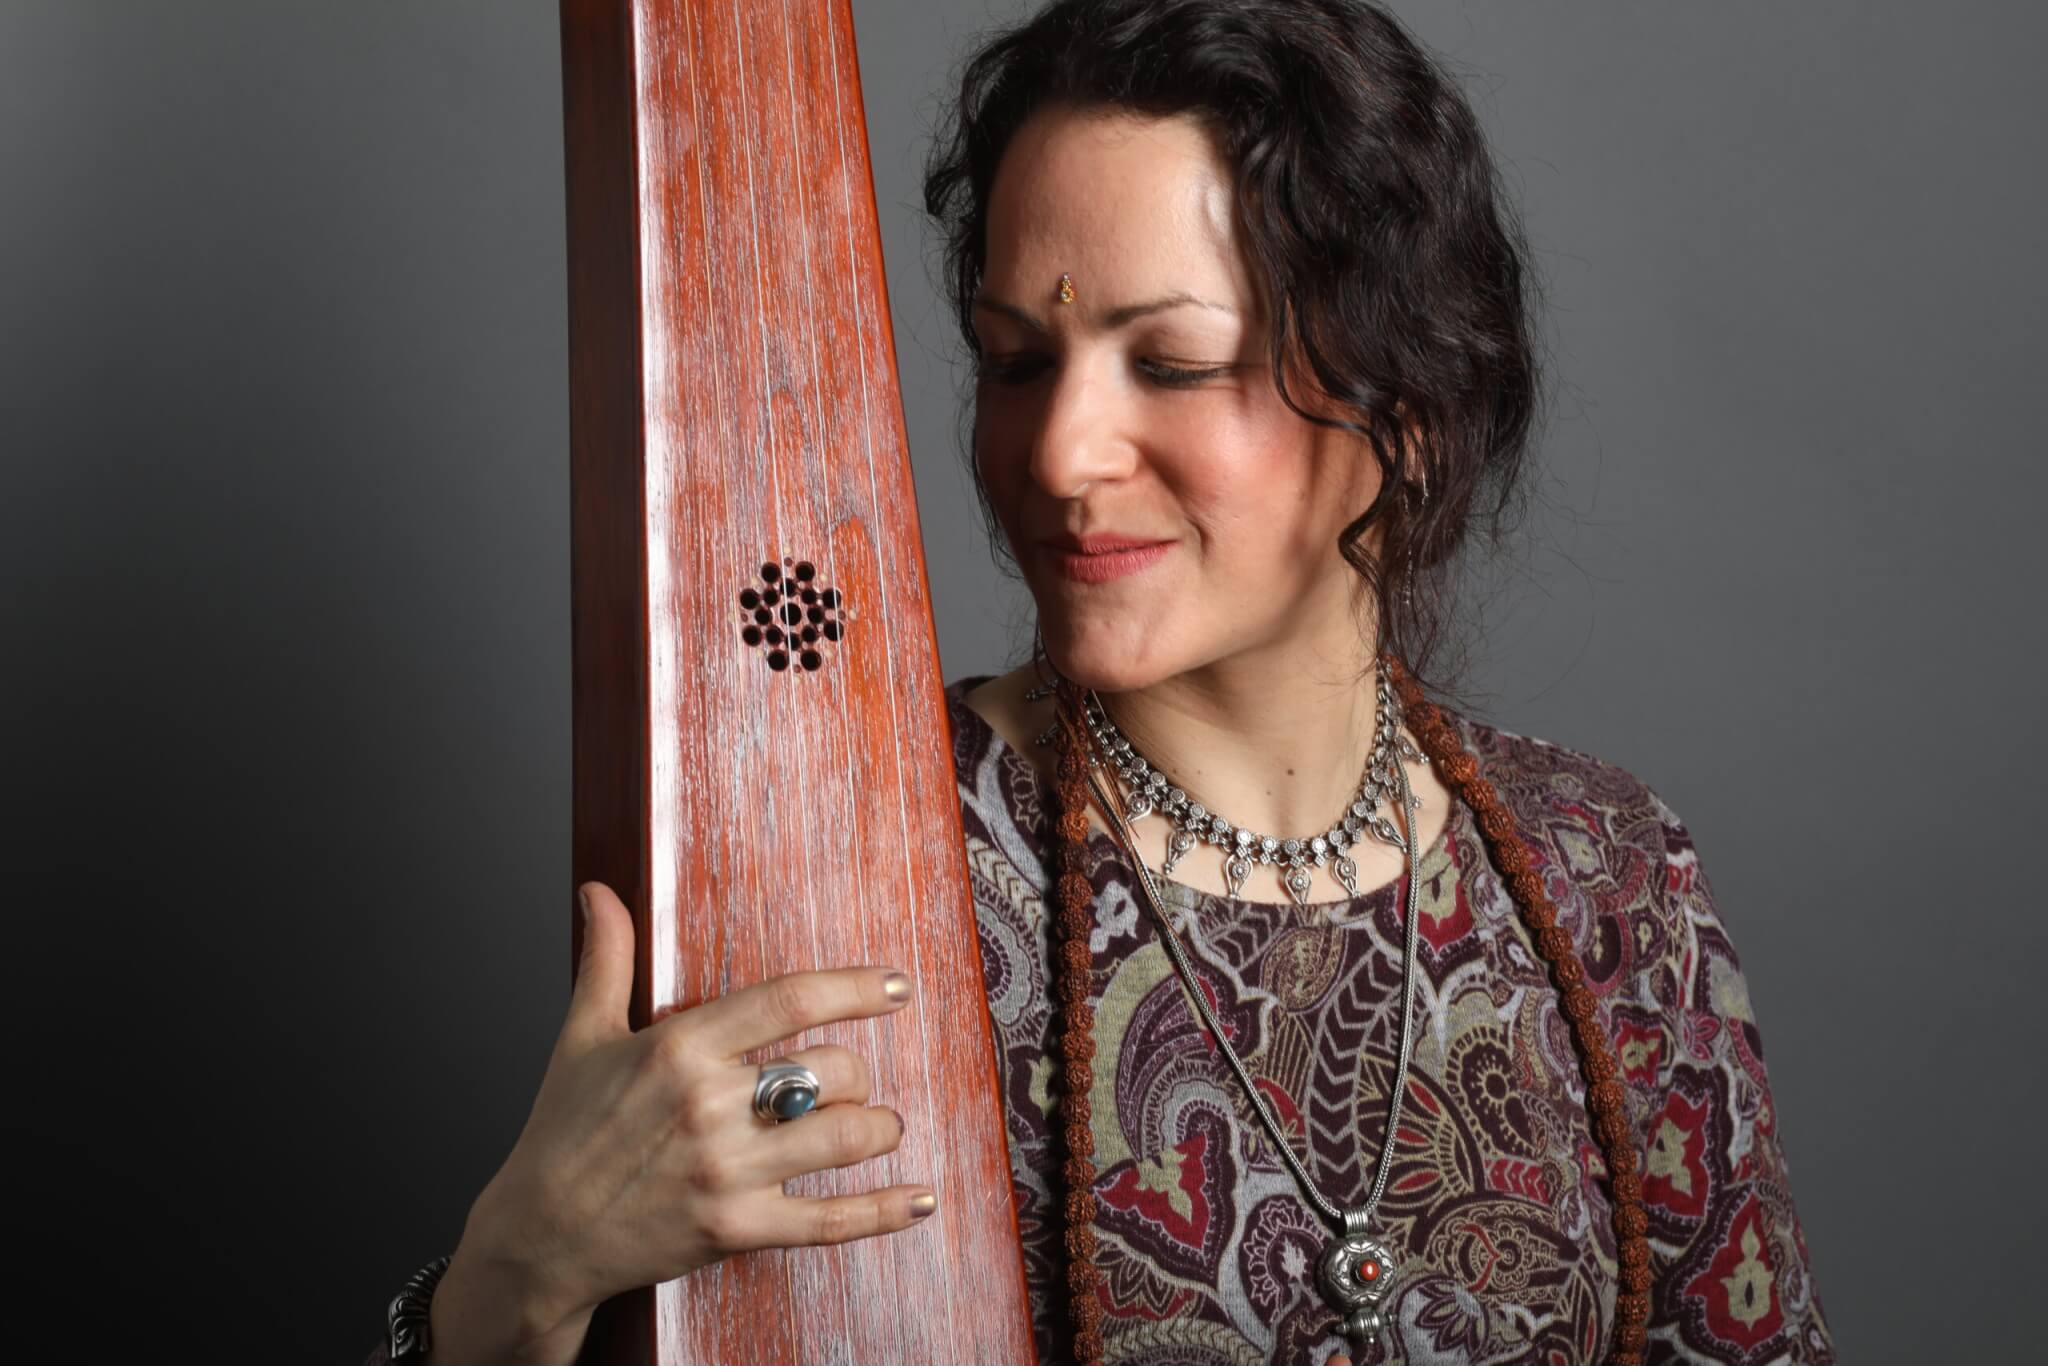 Melissa de valera joue au tampura et chante des mantra